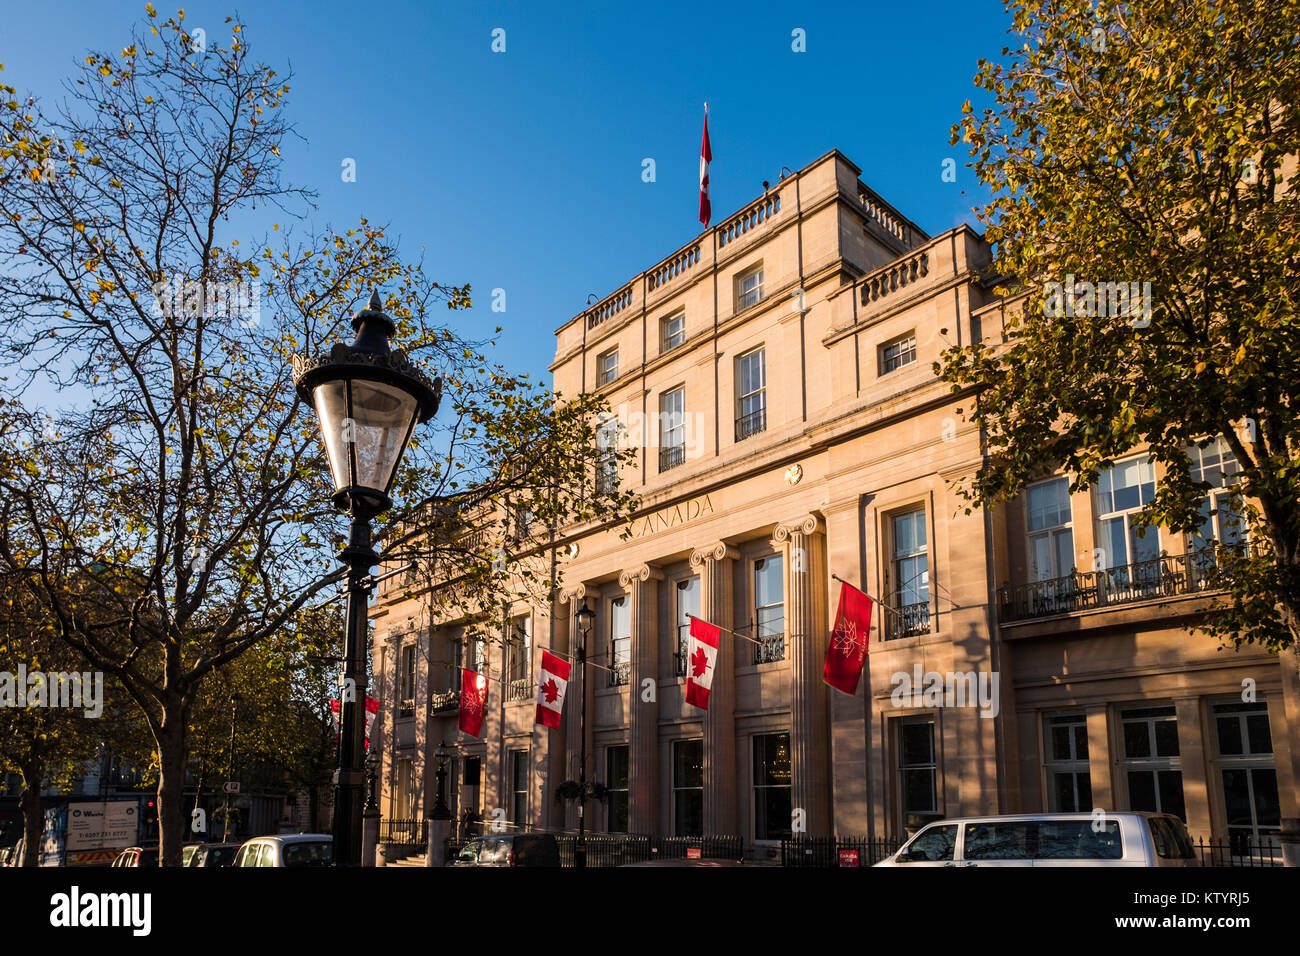 Kanada Haus, Büros der Hohen Kommission von Kanada, Trafalgar Square, London, England, Großbritannien Stockfoto